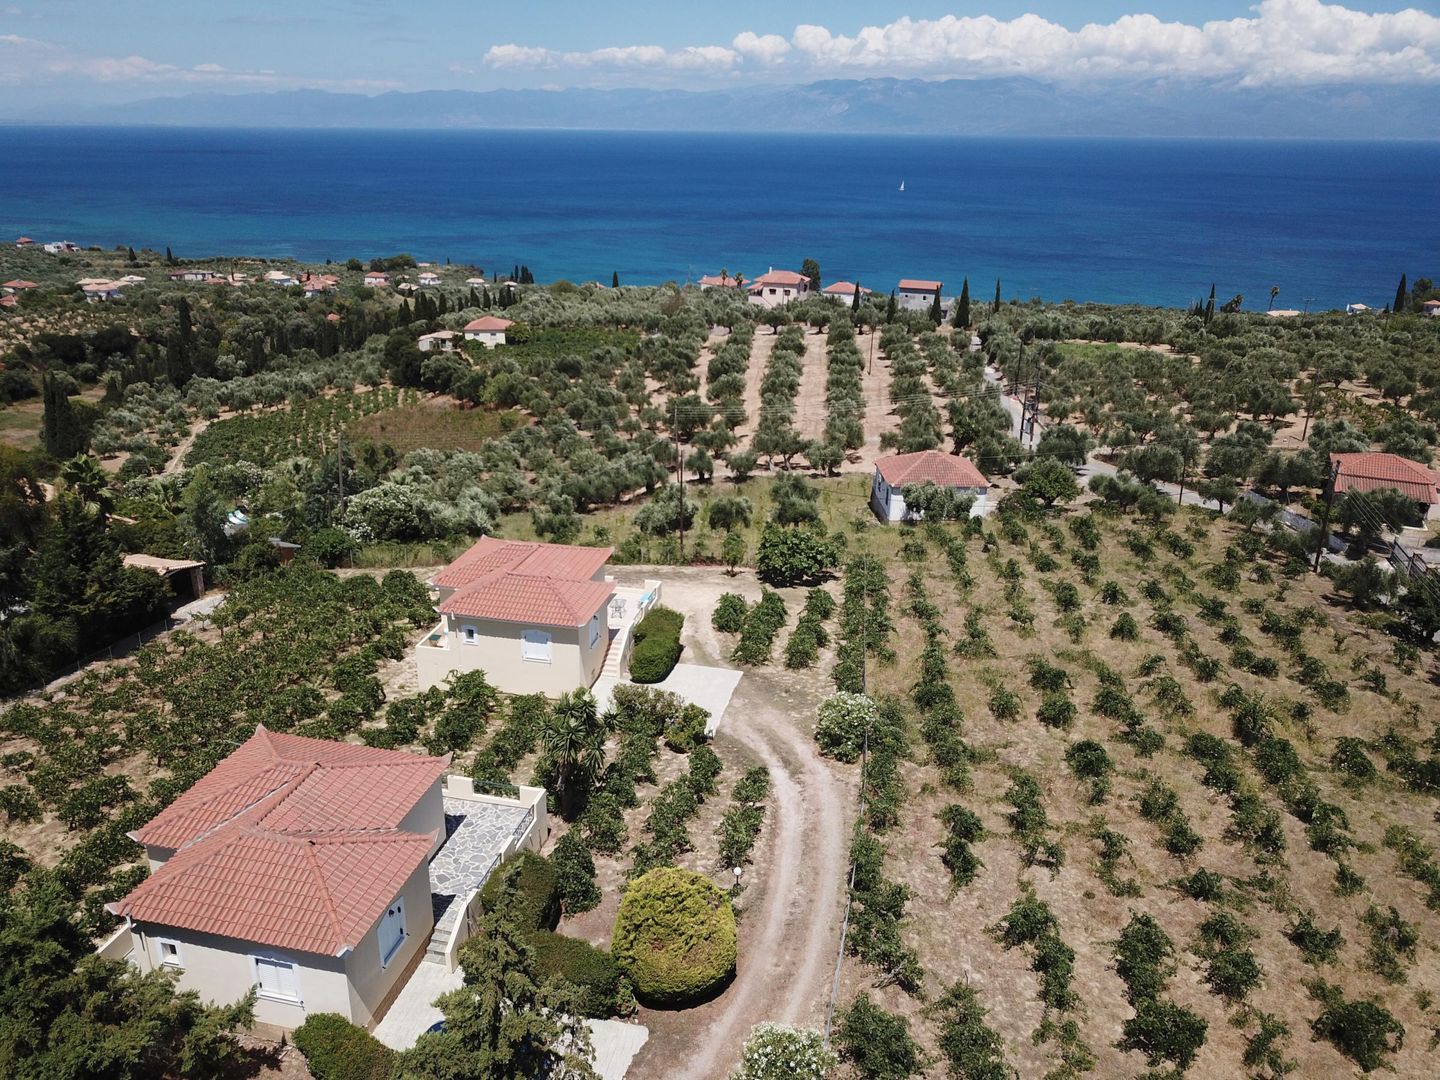 Romantisches Ferienhaus in schöner Lage, nah   in Griechenland